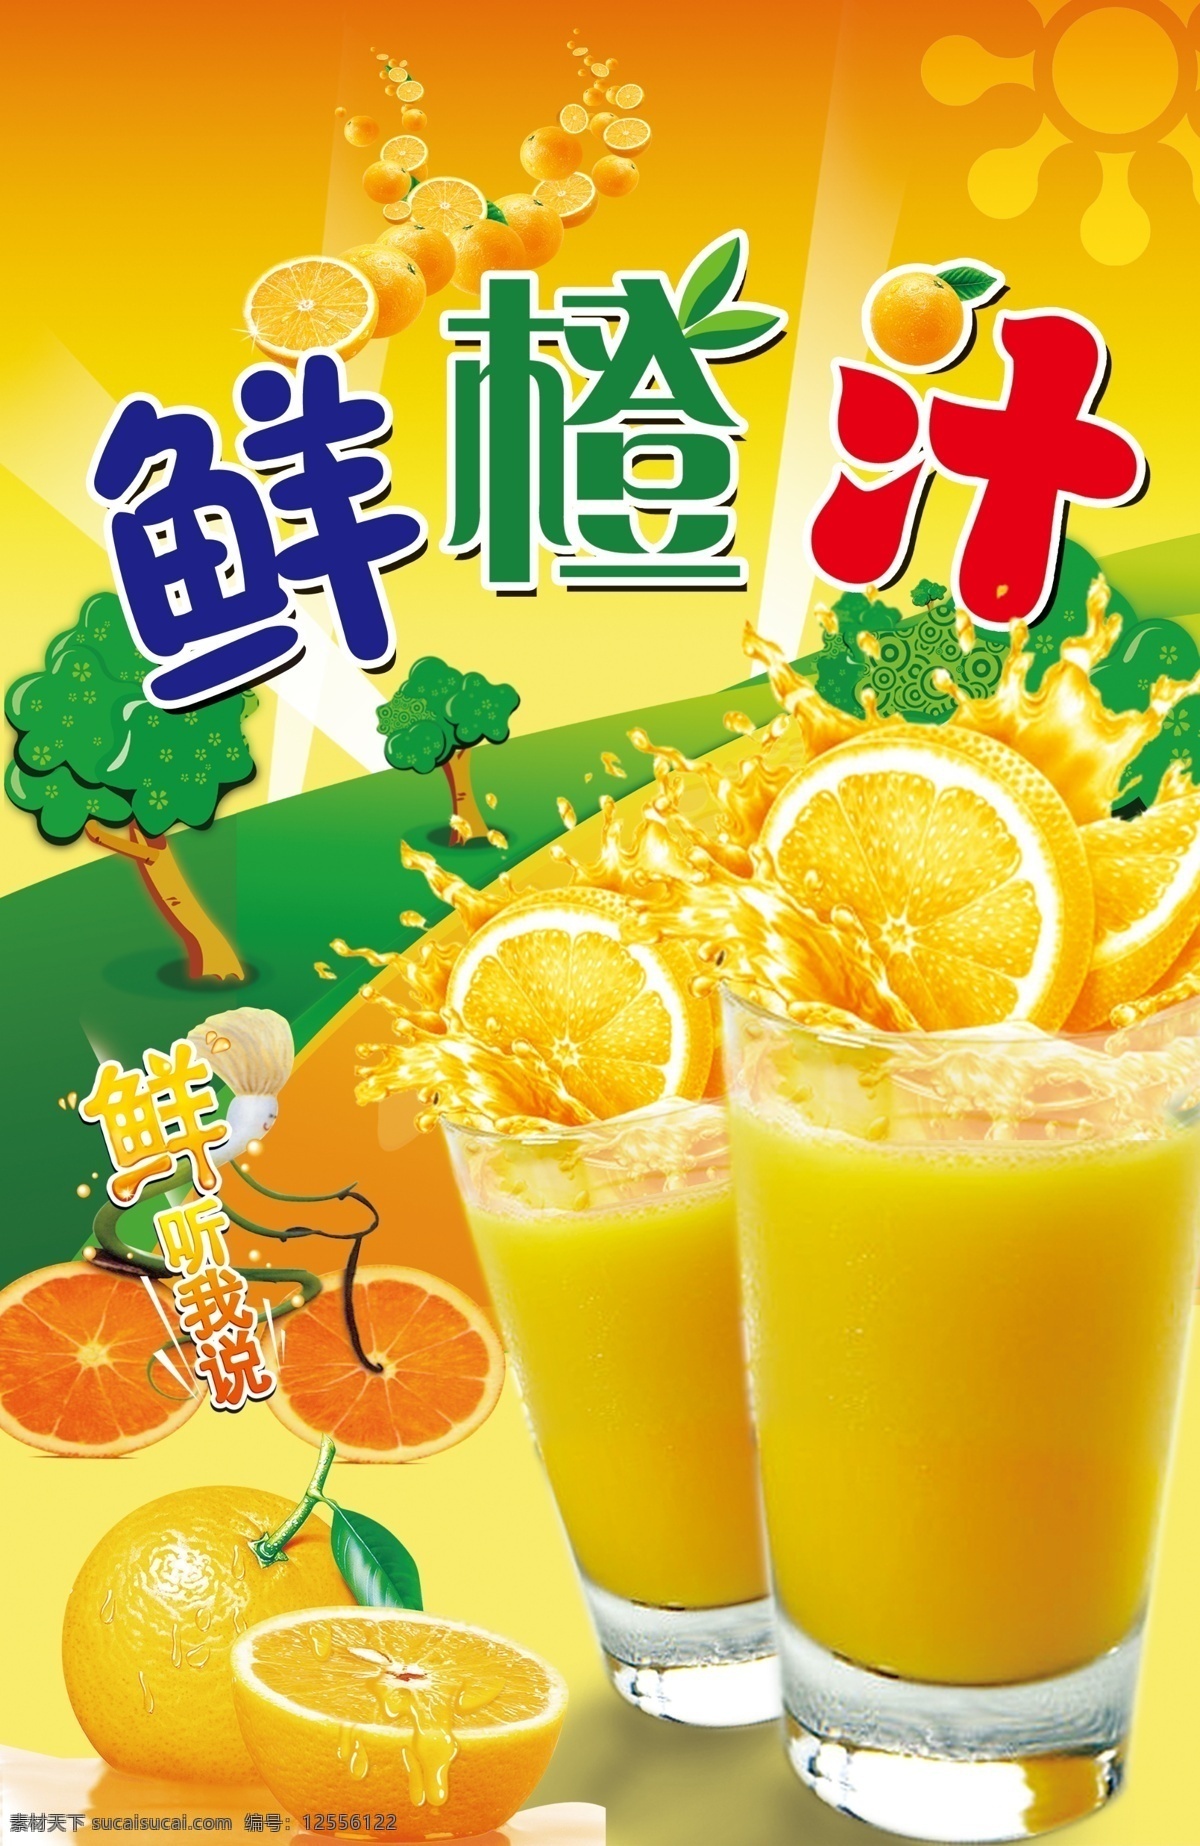 香橙汁 鲜橙汁 鲜橙多 橙汁 橙子 香橙 橘子 桔子 水果 果汁 饮料 橘黄 水纹 水果小人 鲜听我说 国内广告设计 广告设计模板 源文件